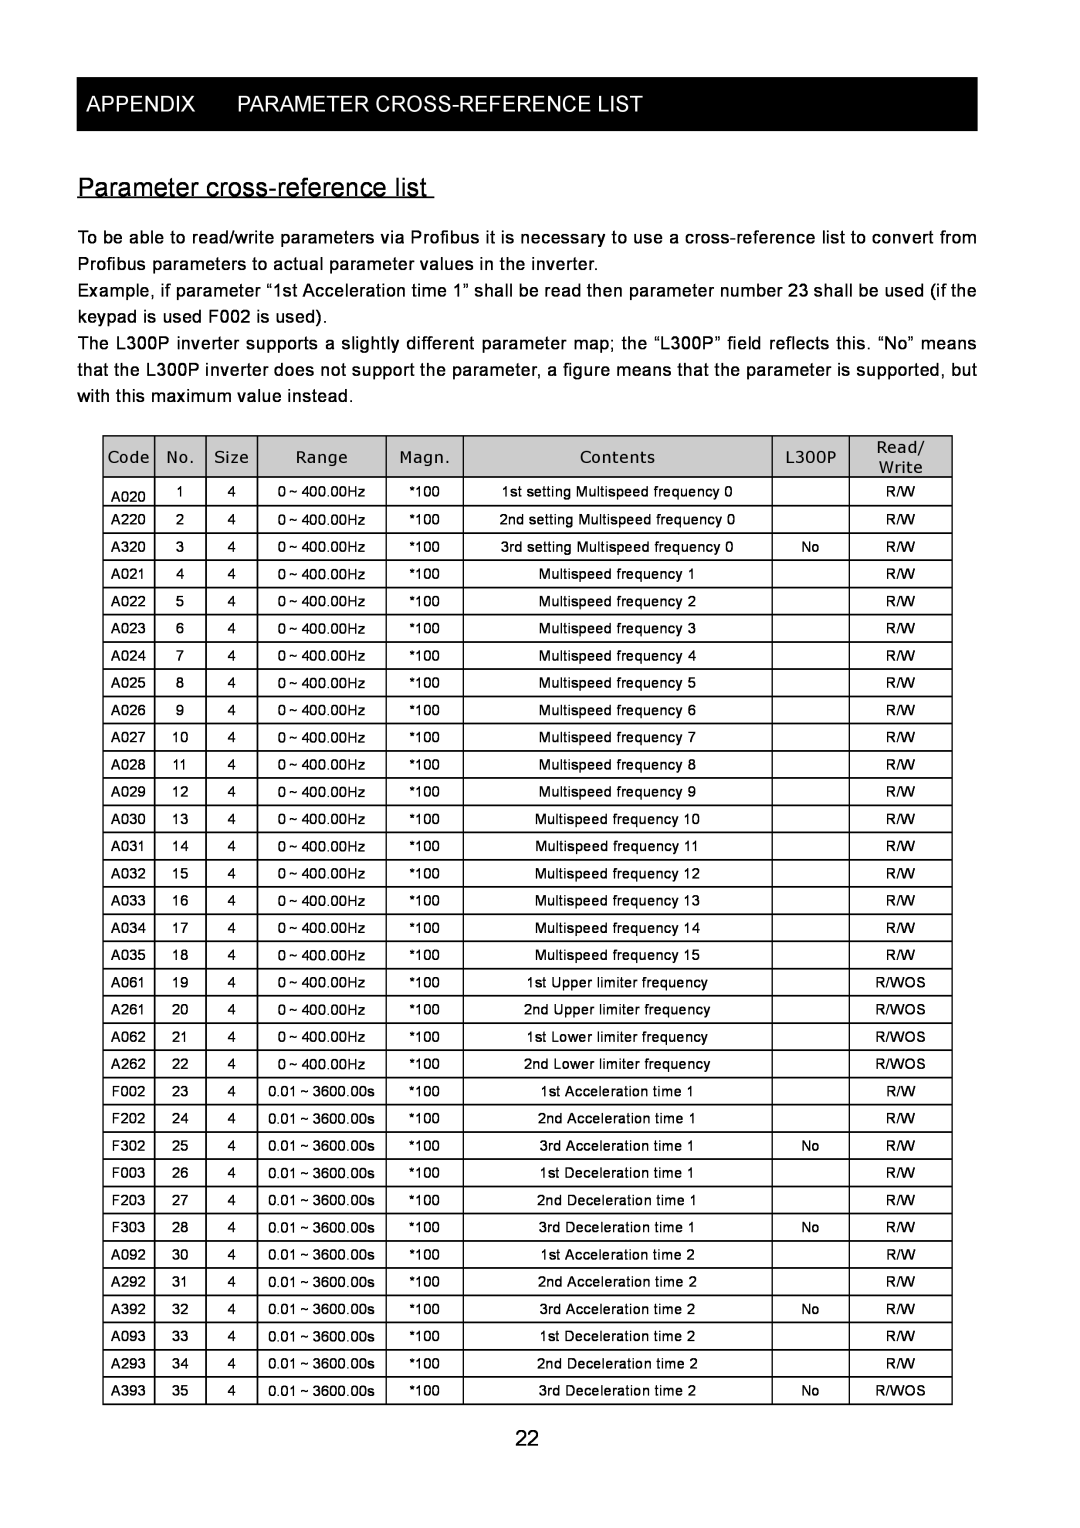 Hitachi SJ-PB(T) instruction manual Parameter cross-referencelist, Appendix Parameter Cross-Referencelist 